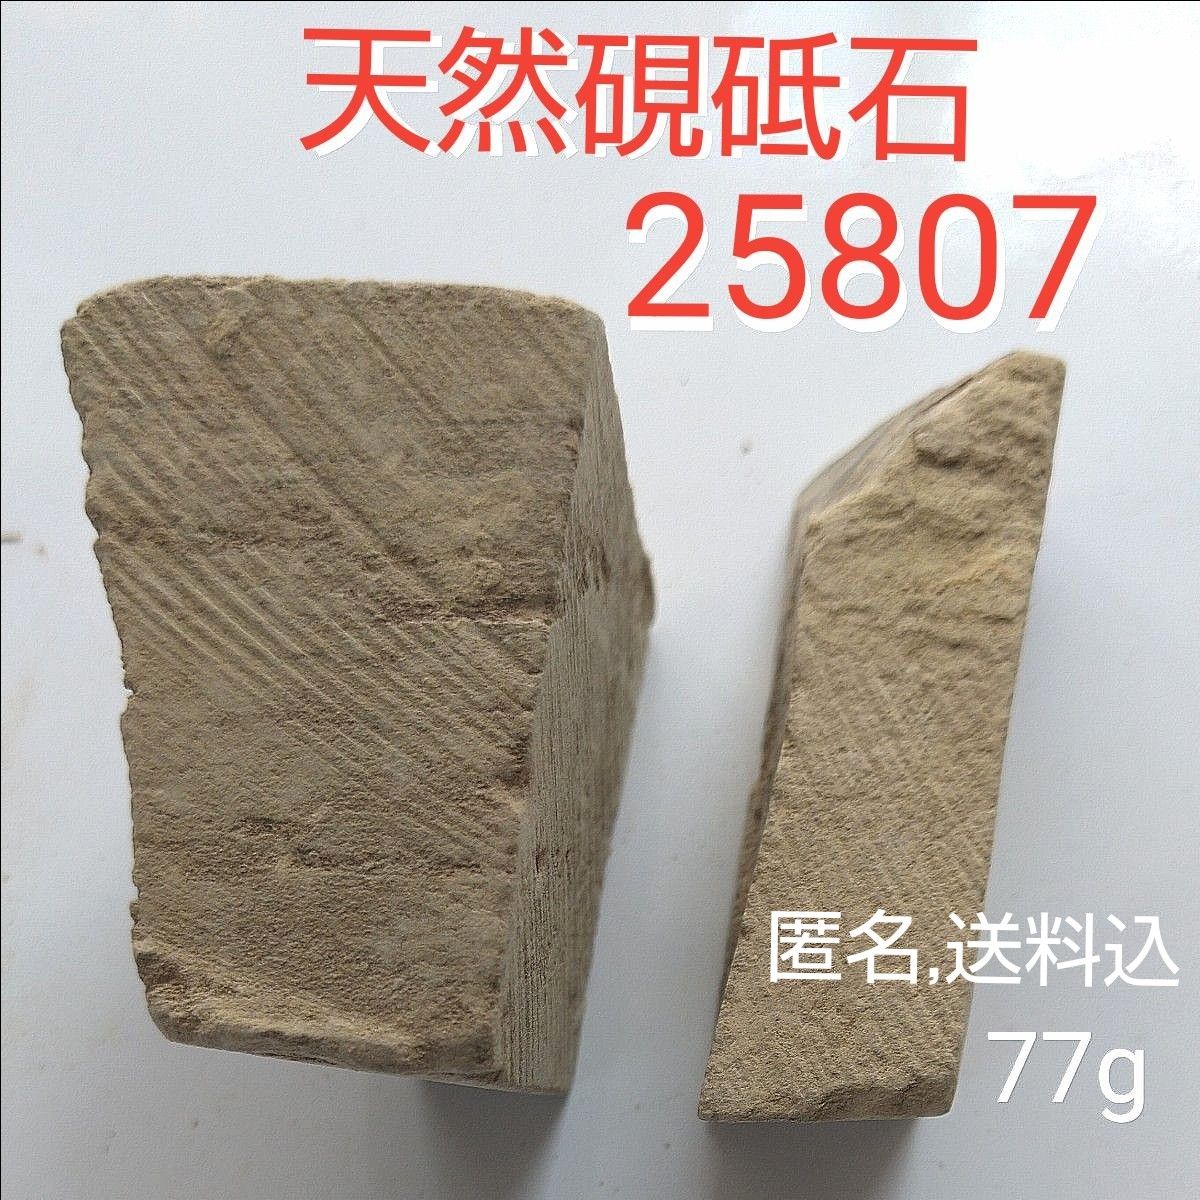 天然硯砥石 型番25807、 2個